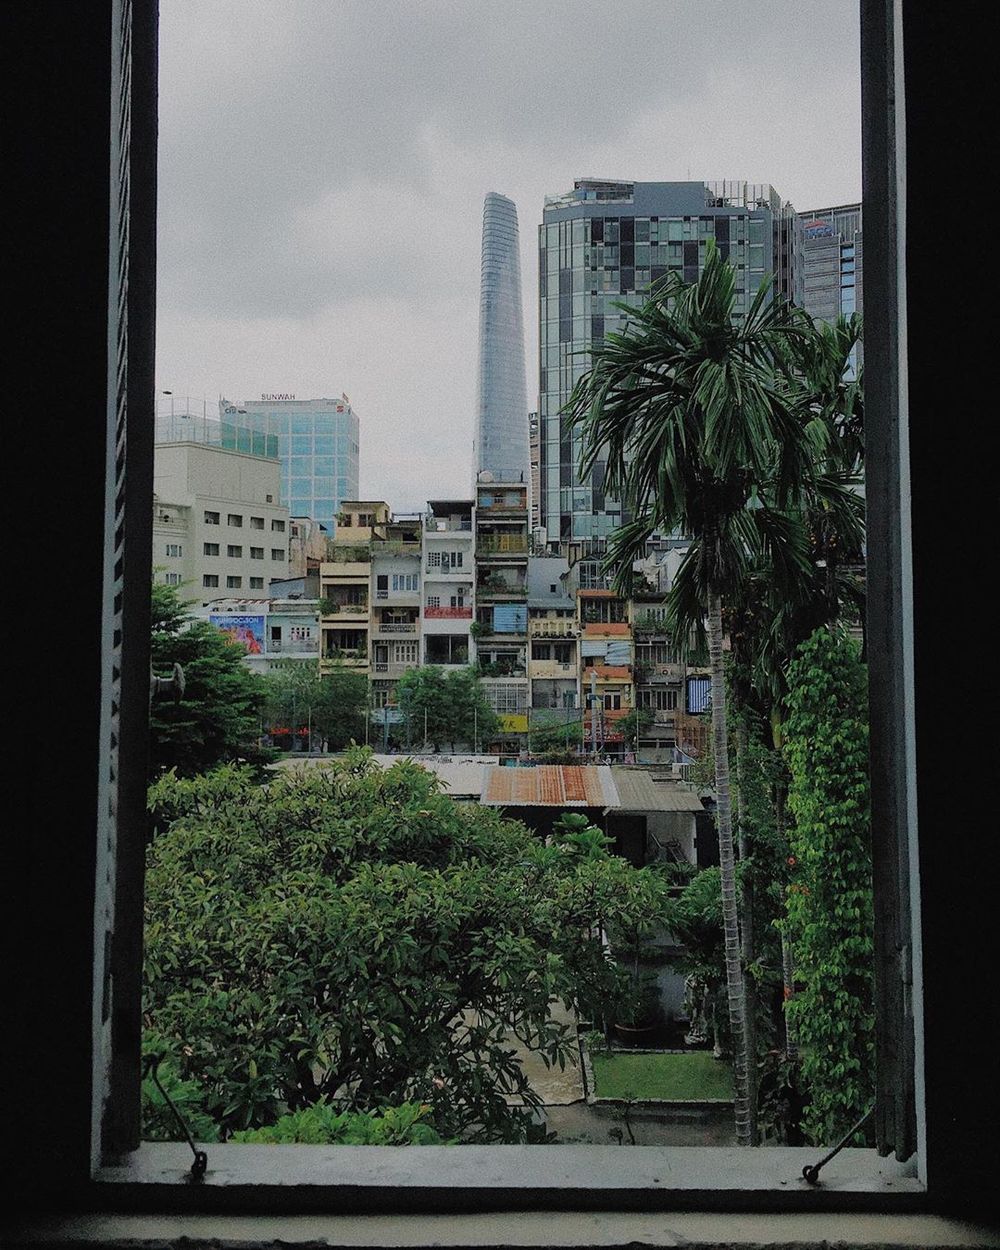  
Góc cửa sổ có view khá đẹp nhìn thấy được tòa tháp Bitexco của thành phố. (Ảnh: takenby_nd)